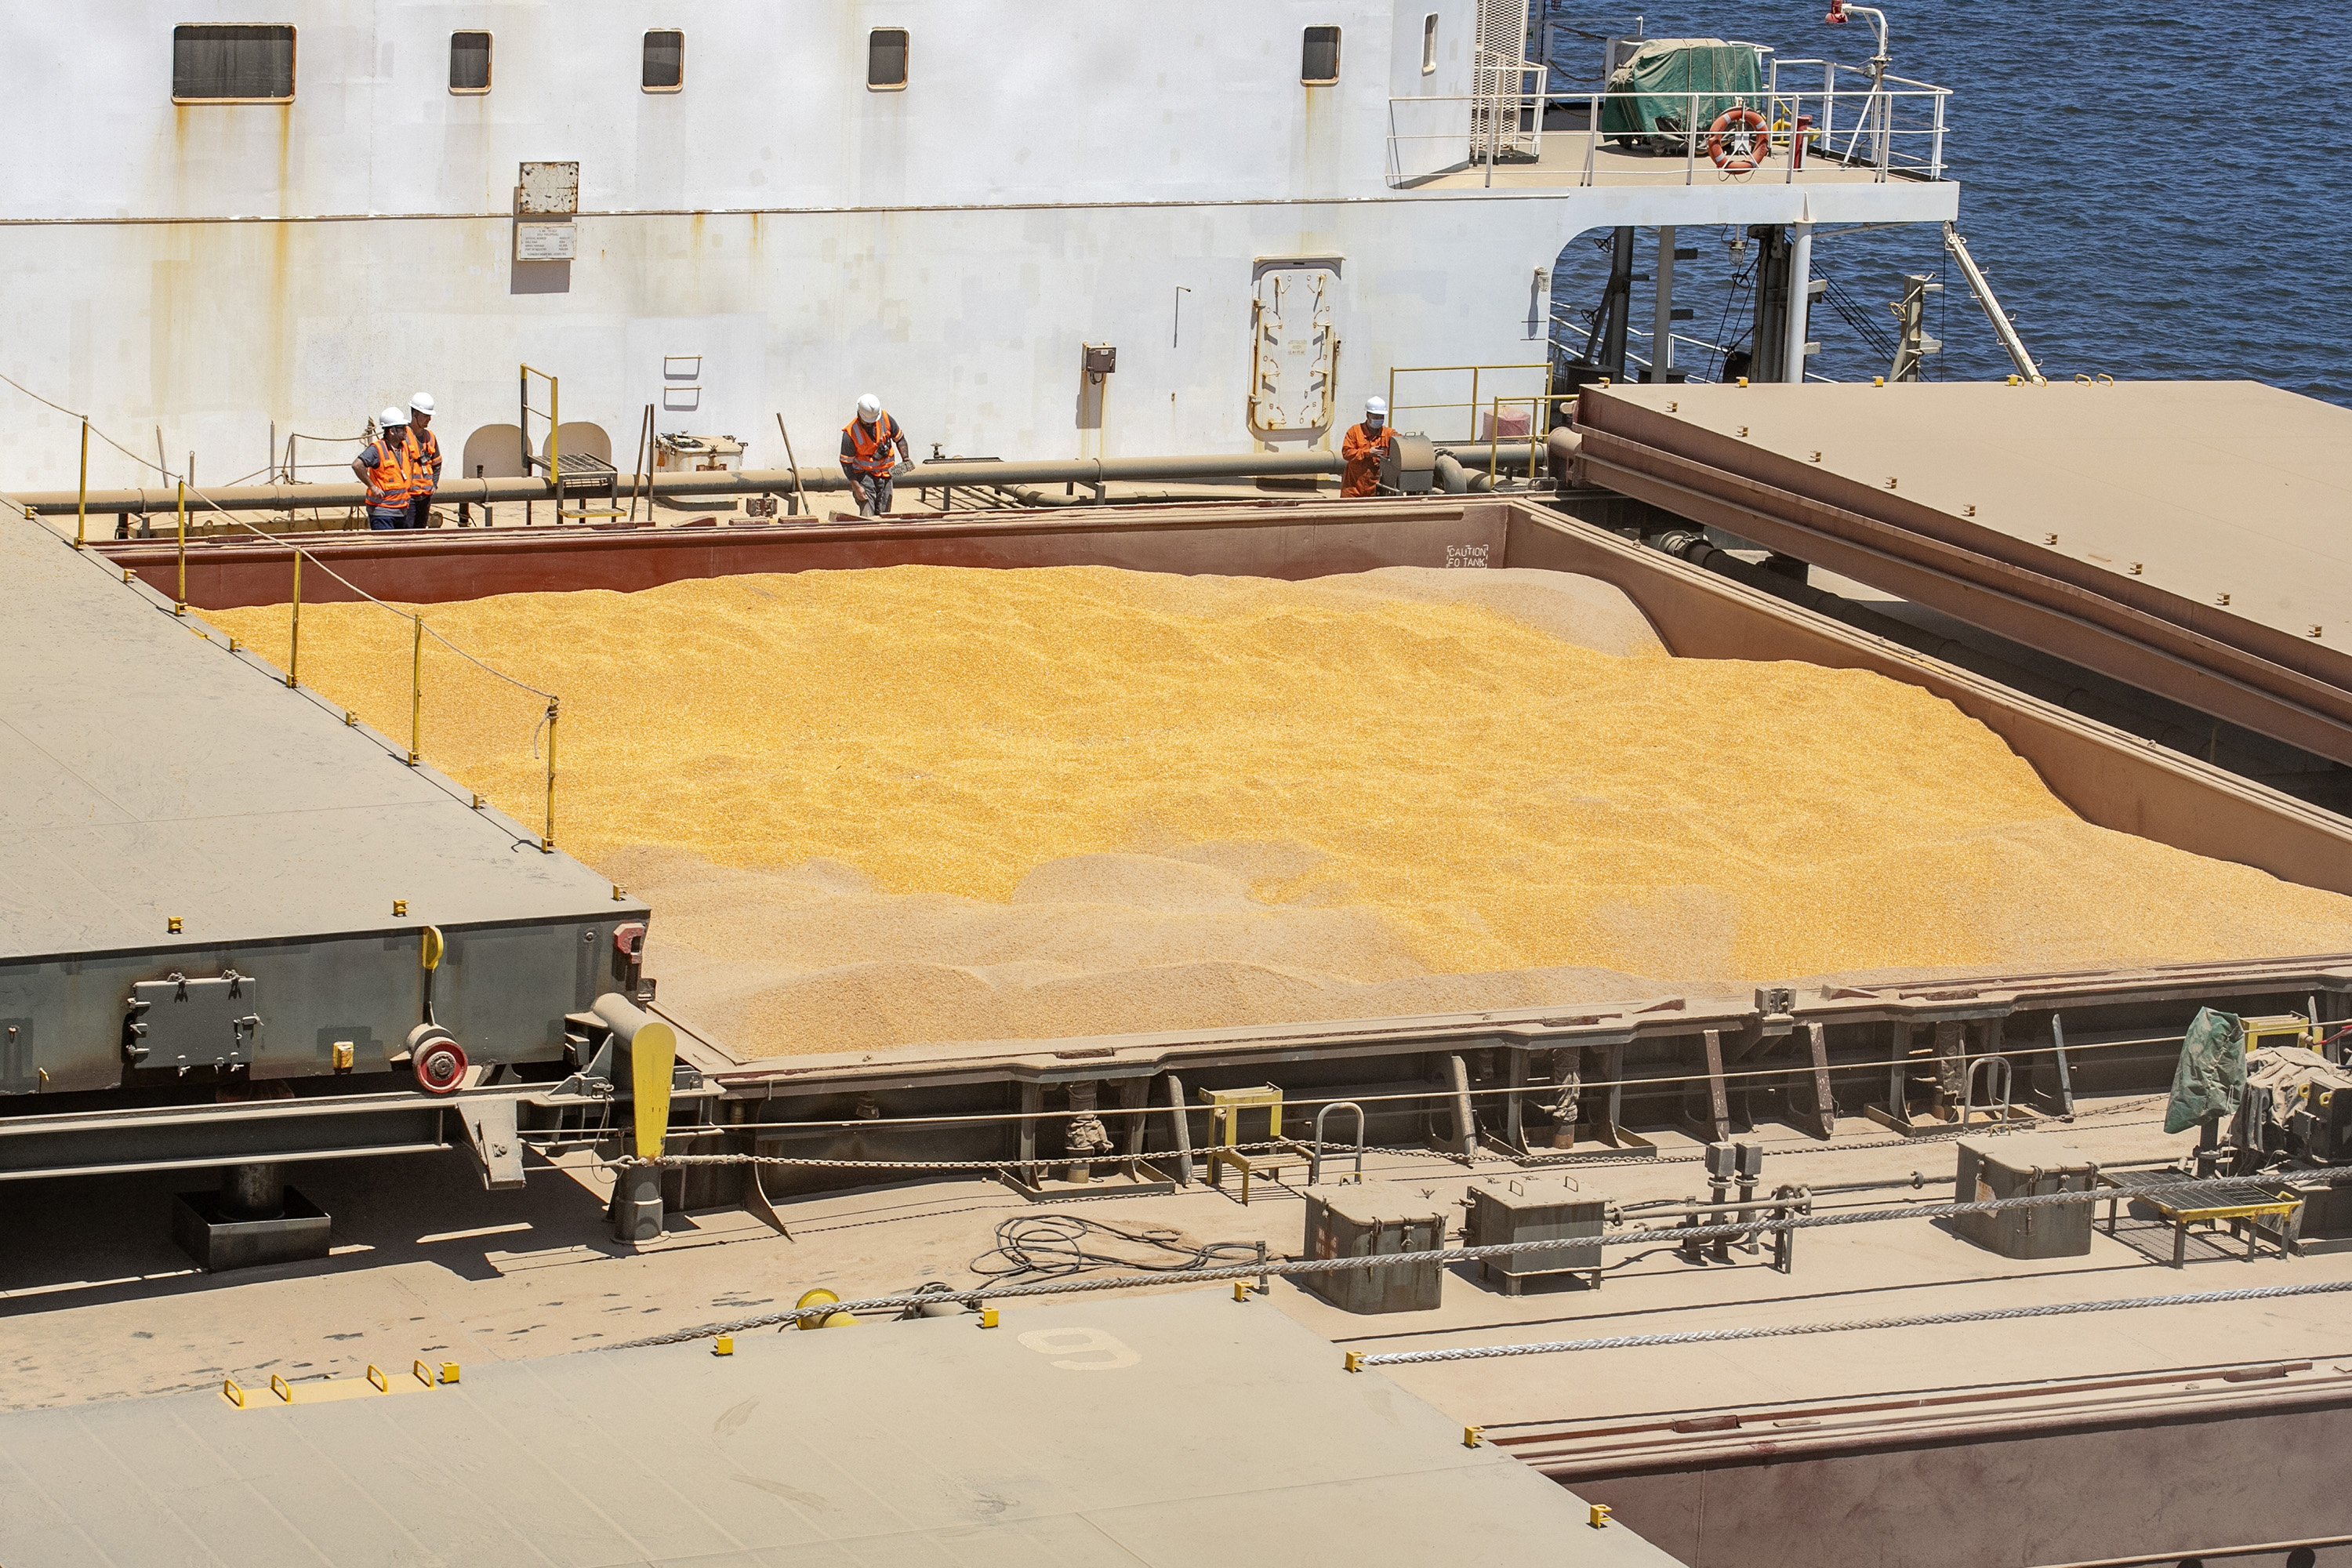  Volume de milho embarcado em janeiro, pelo Porto de Paranaguá, está 161% maior